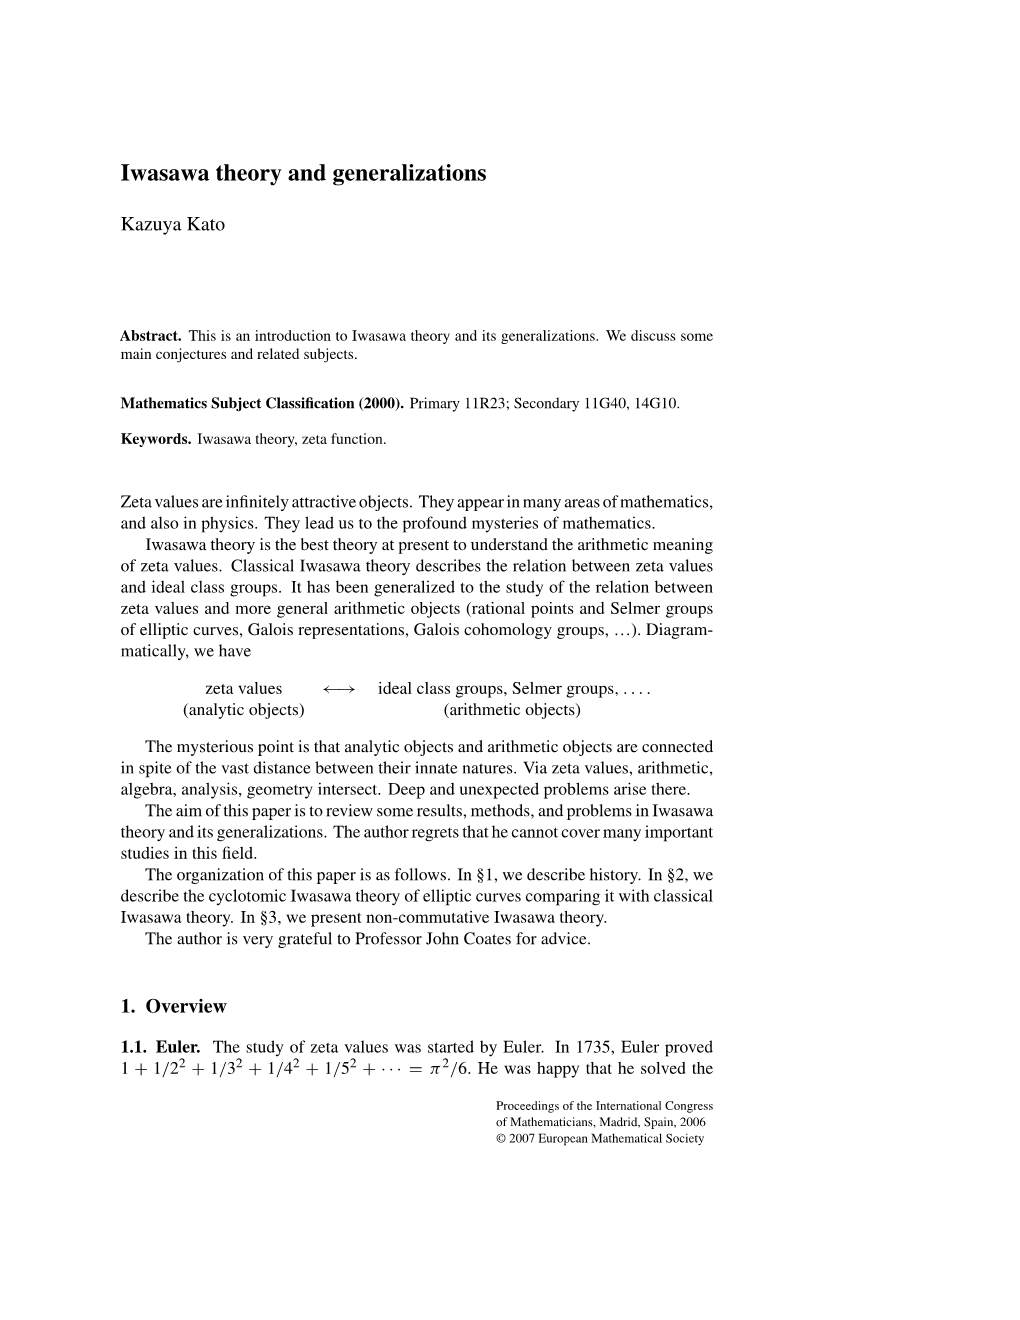 Iwasawa Theory and Generalizations